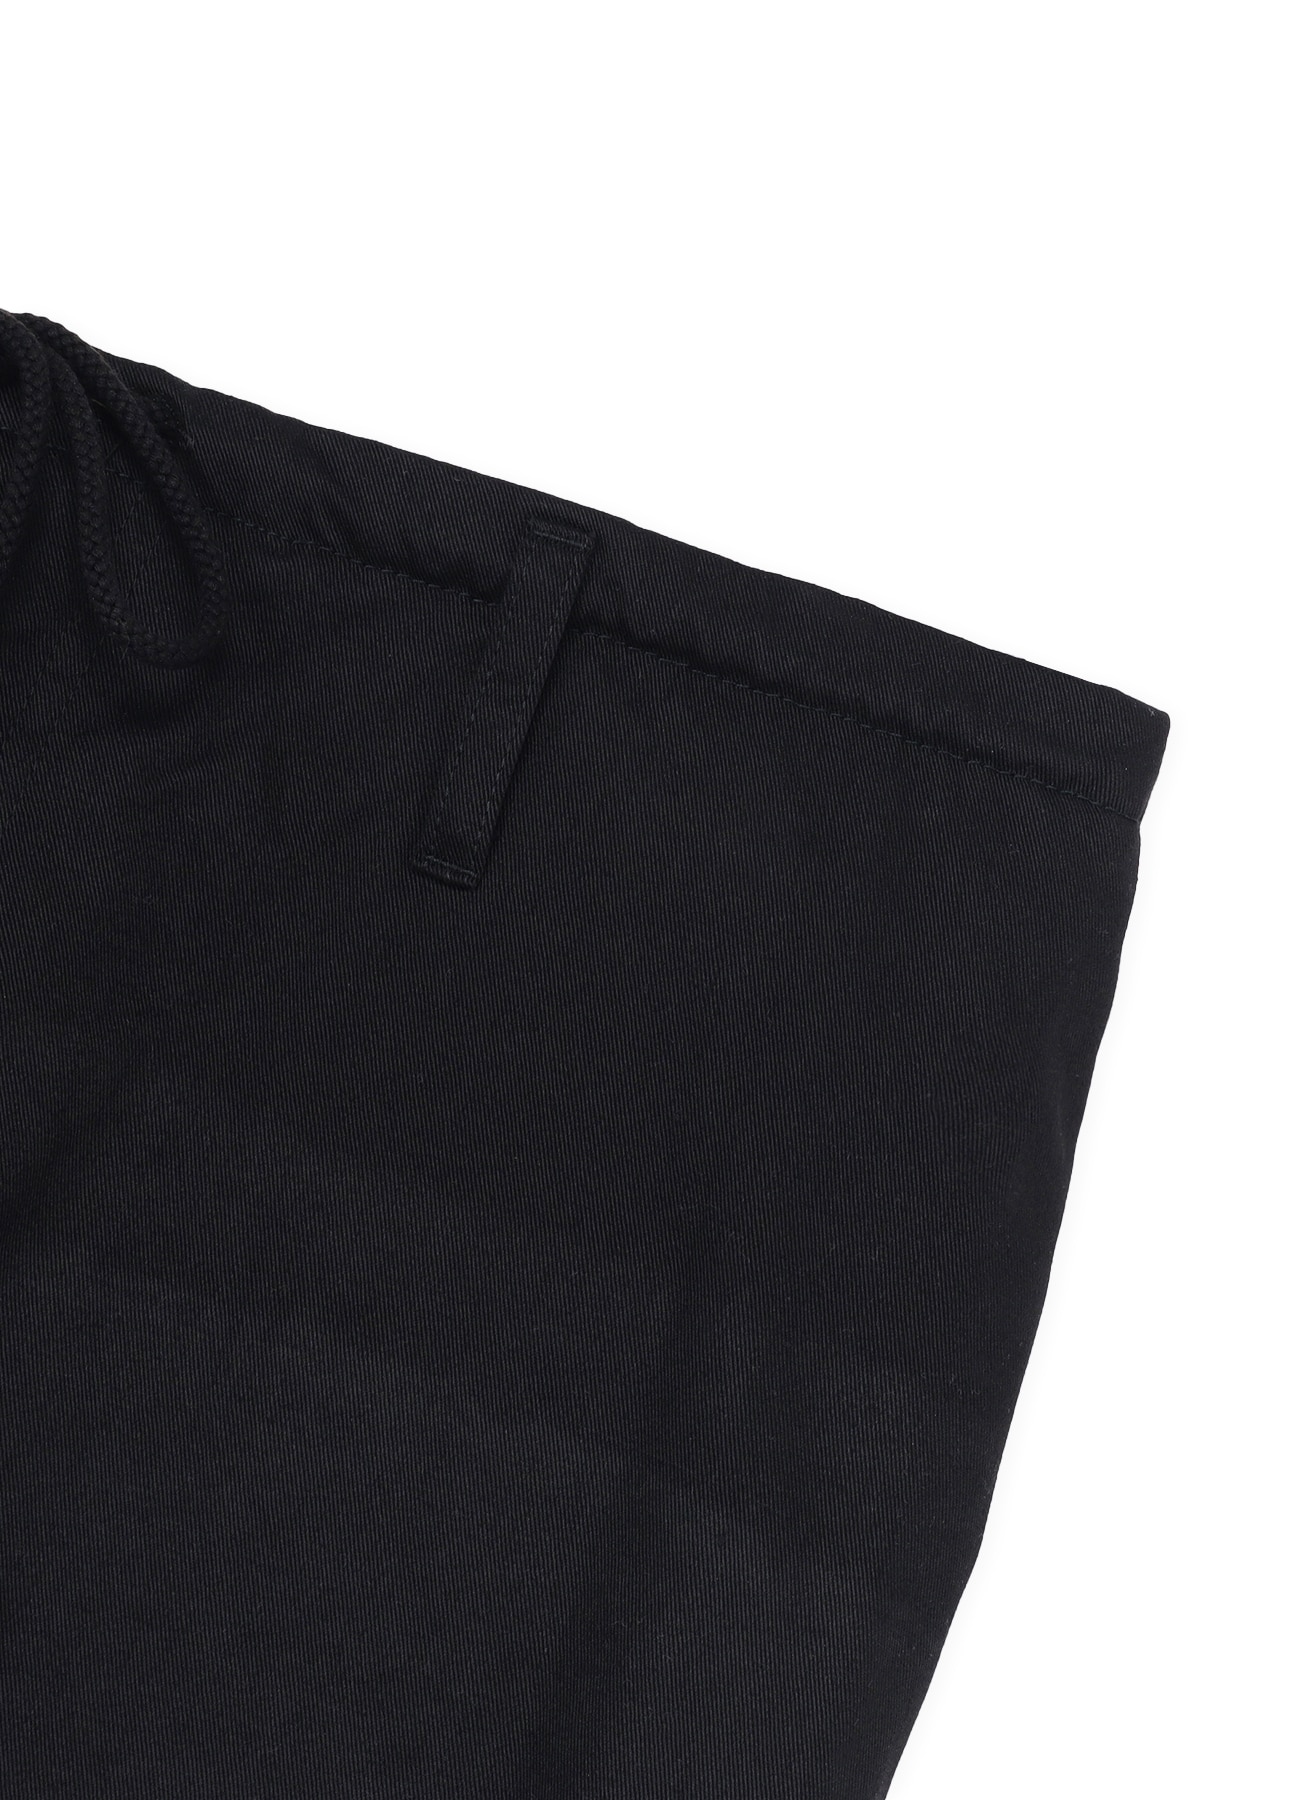 Cotton Chino PURPLE ROSE Pants(M BLACK): YOHJI YAMAMOTO｜WILDSIDE YOHJI ...